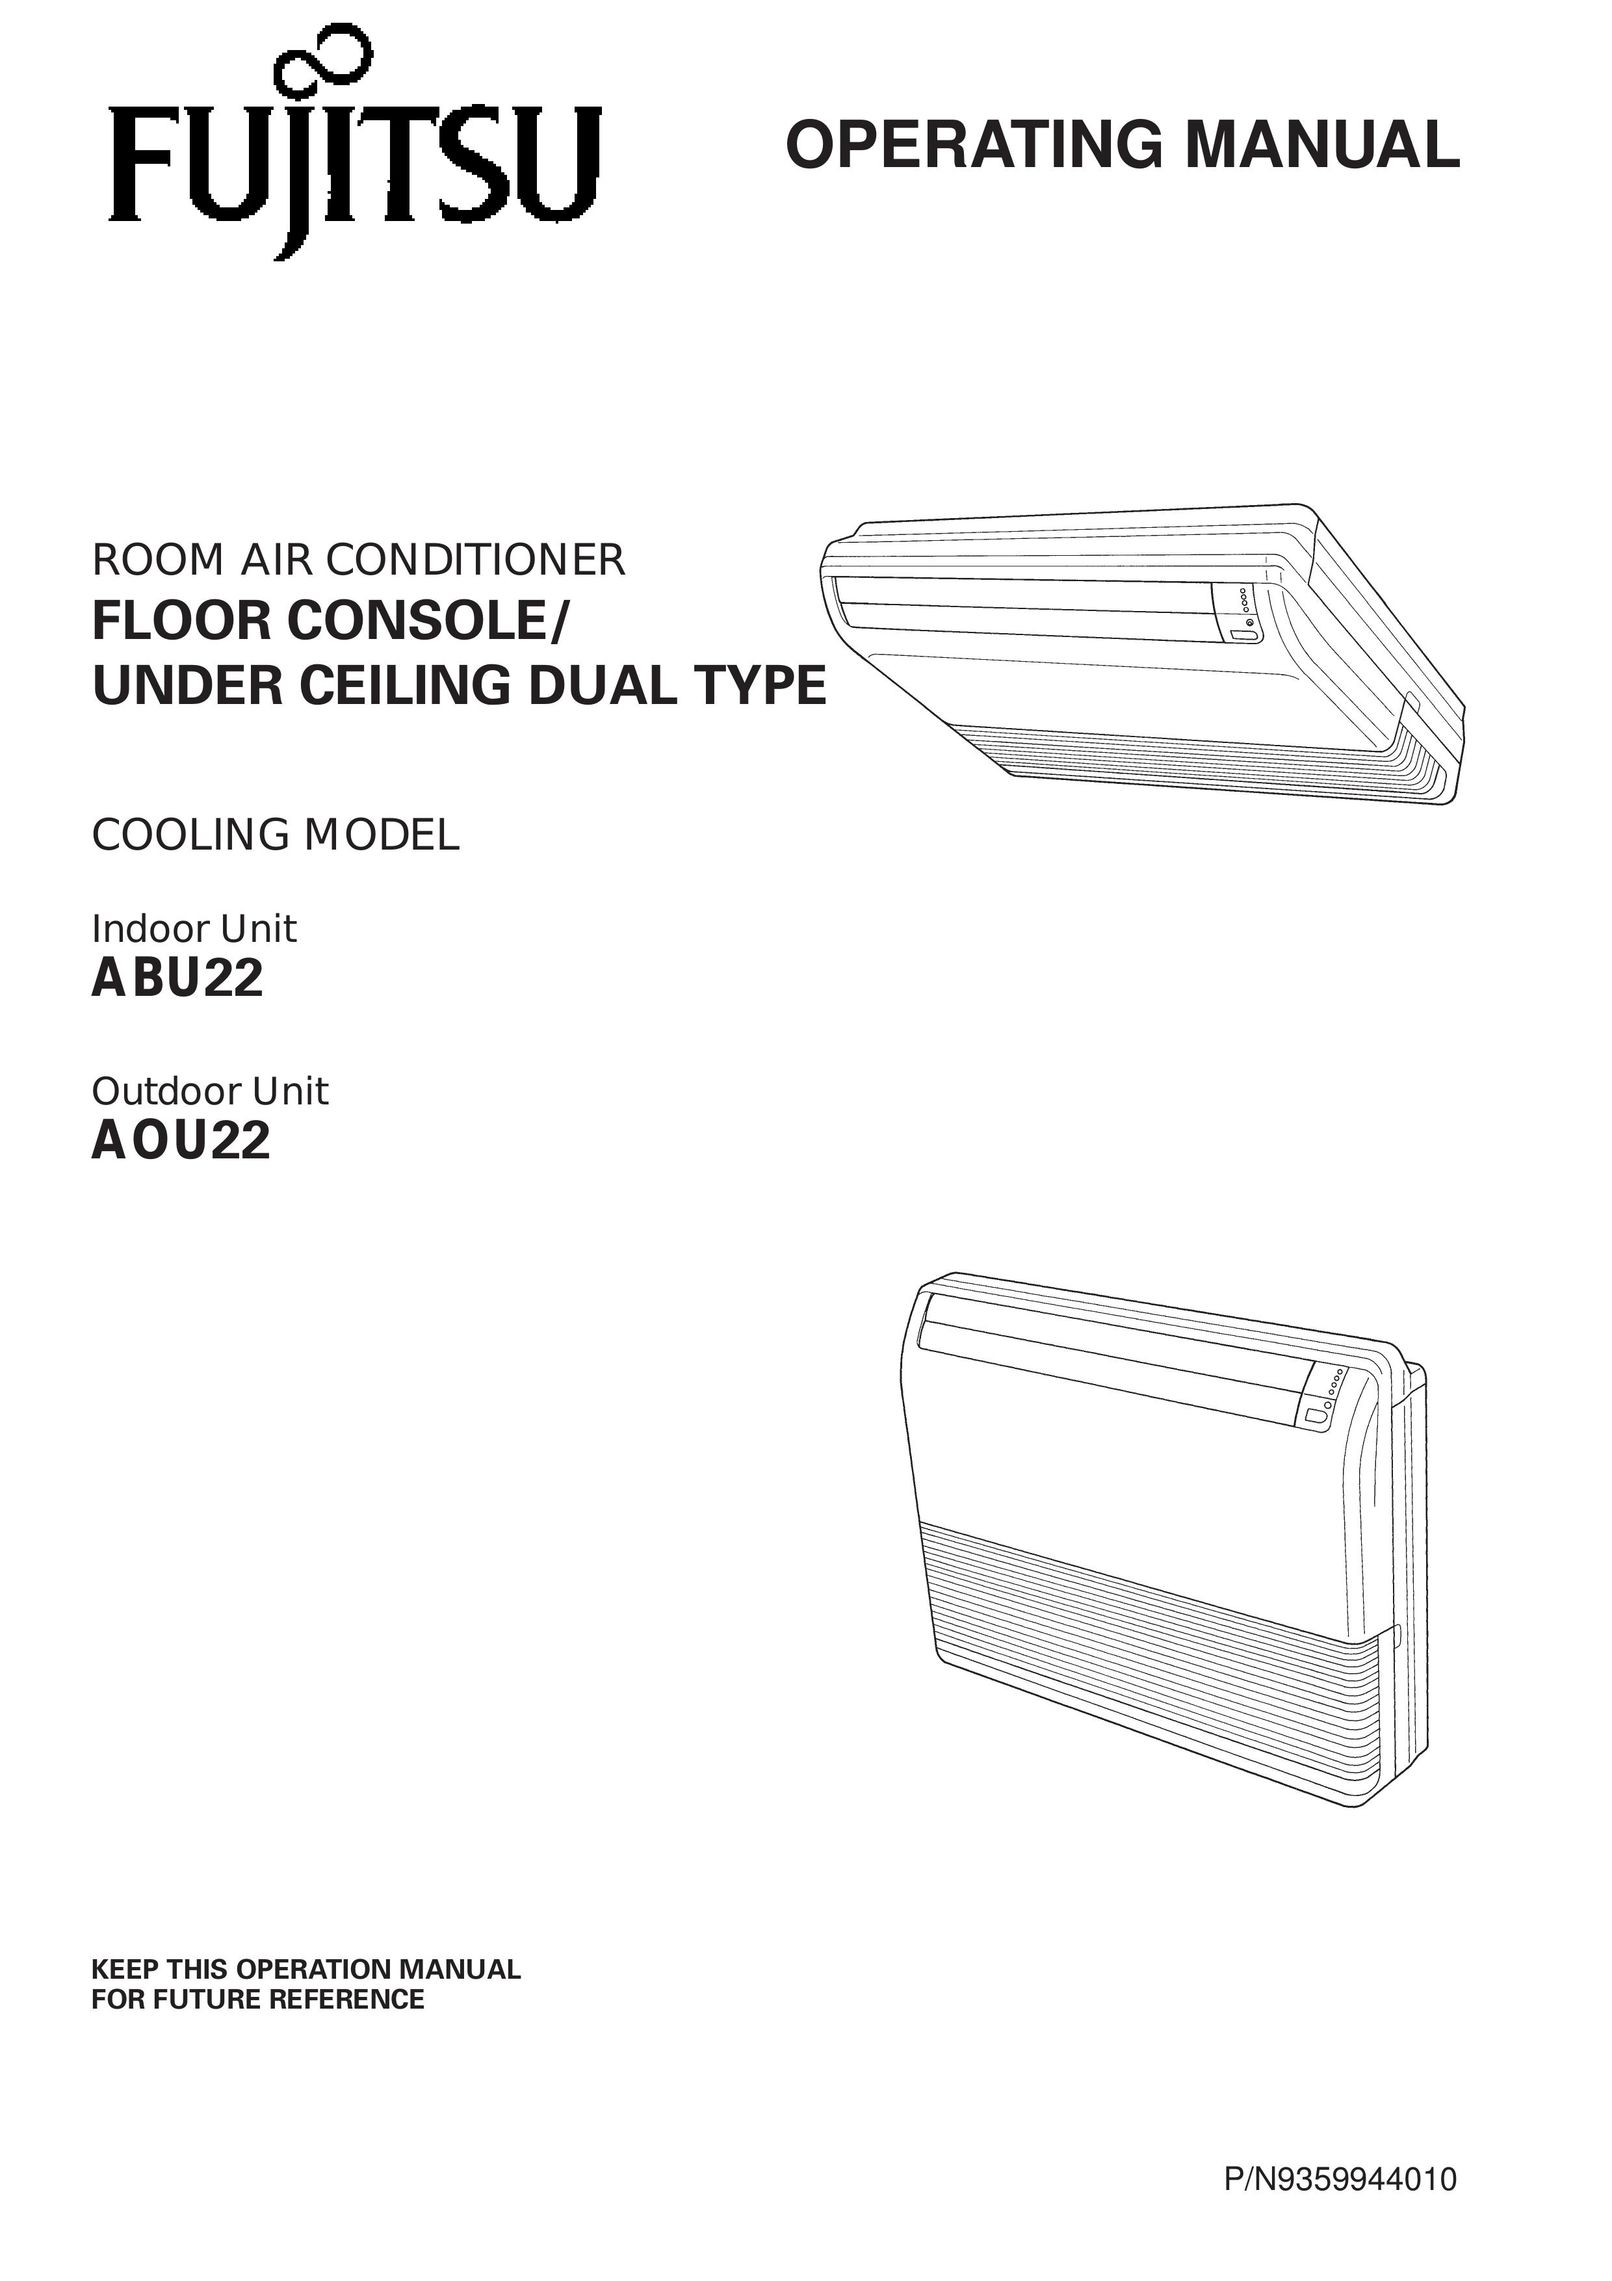 Fujitsu ABU22 Video Game Console User Manual